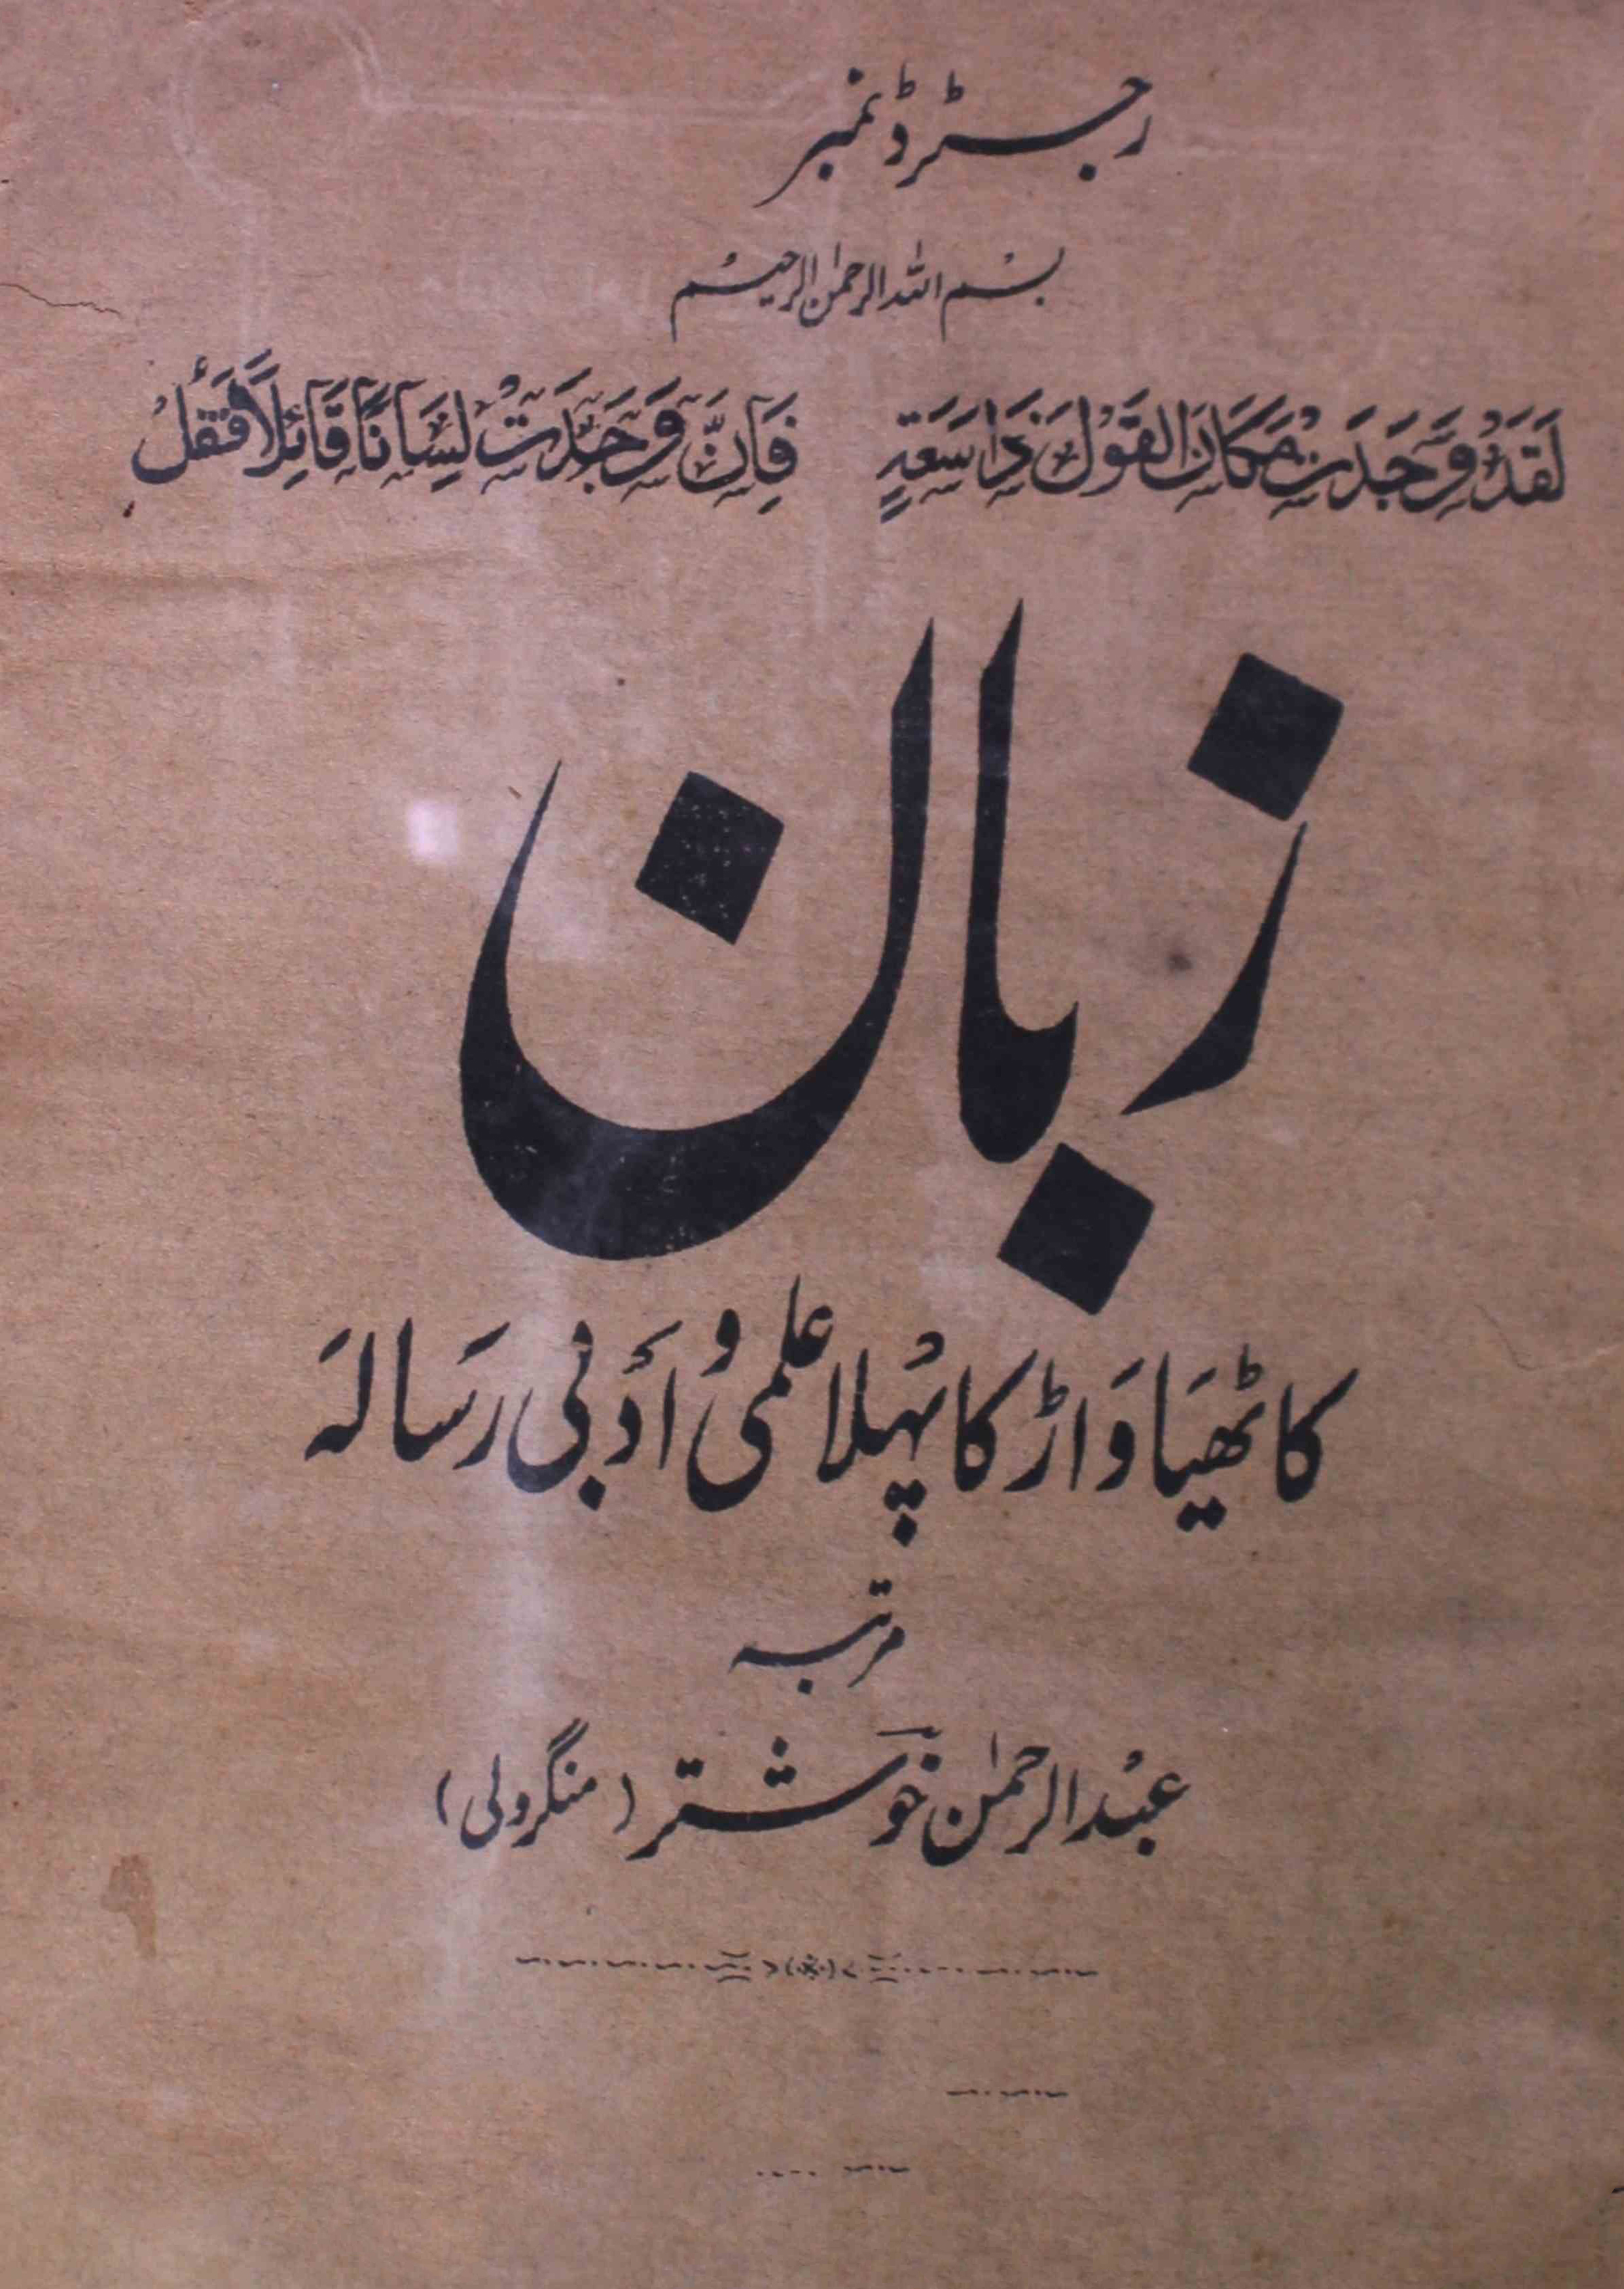 zaban-shumara-number-002-abdur-rahman-khushtar-mangroli-magazines